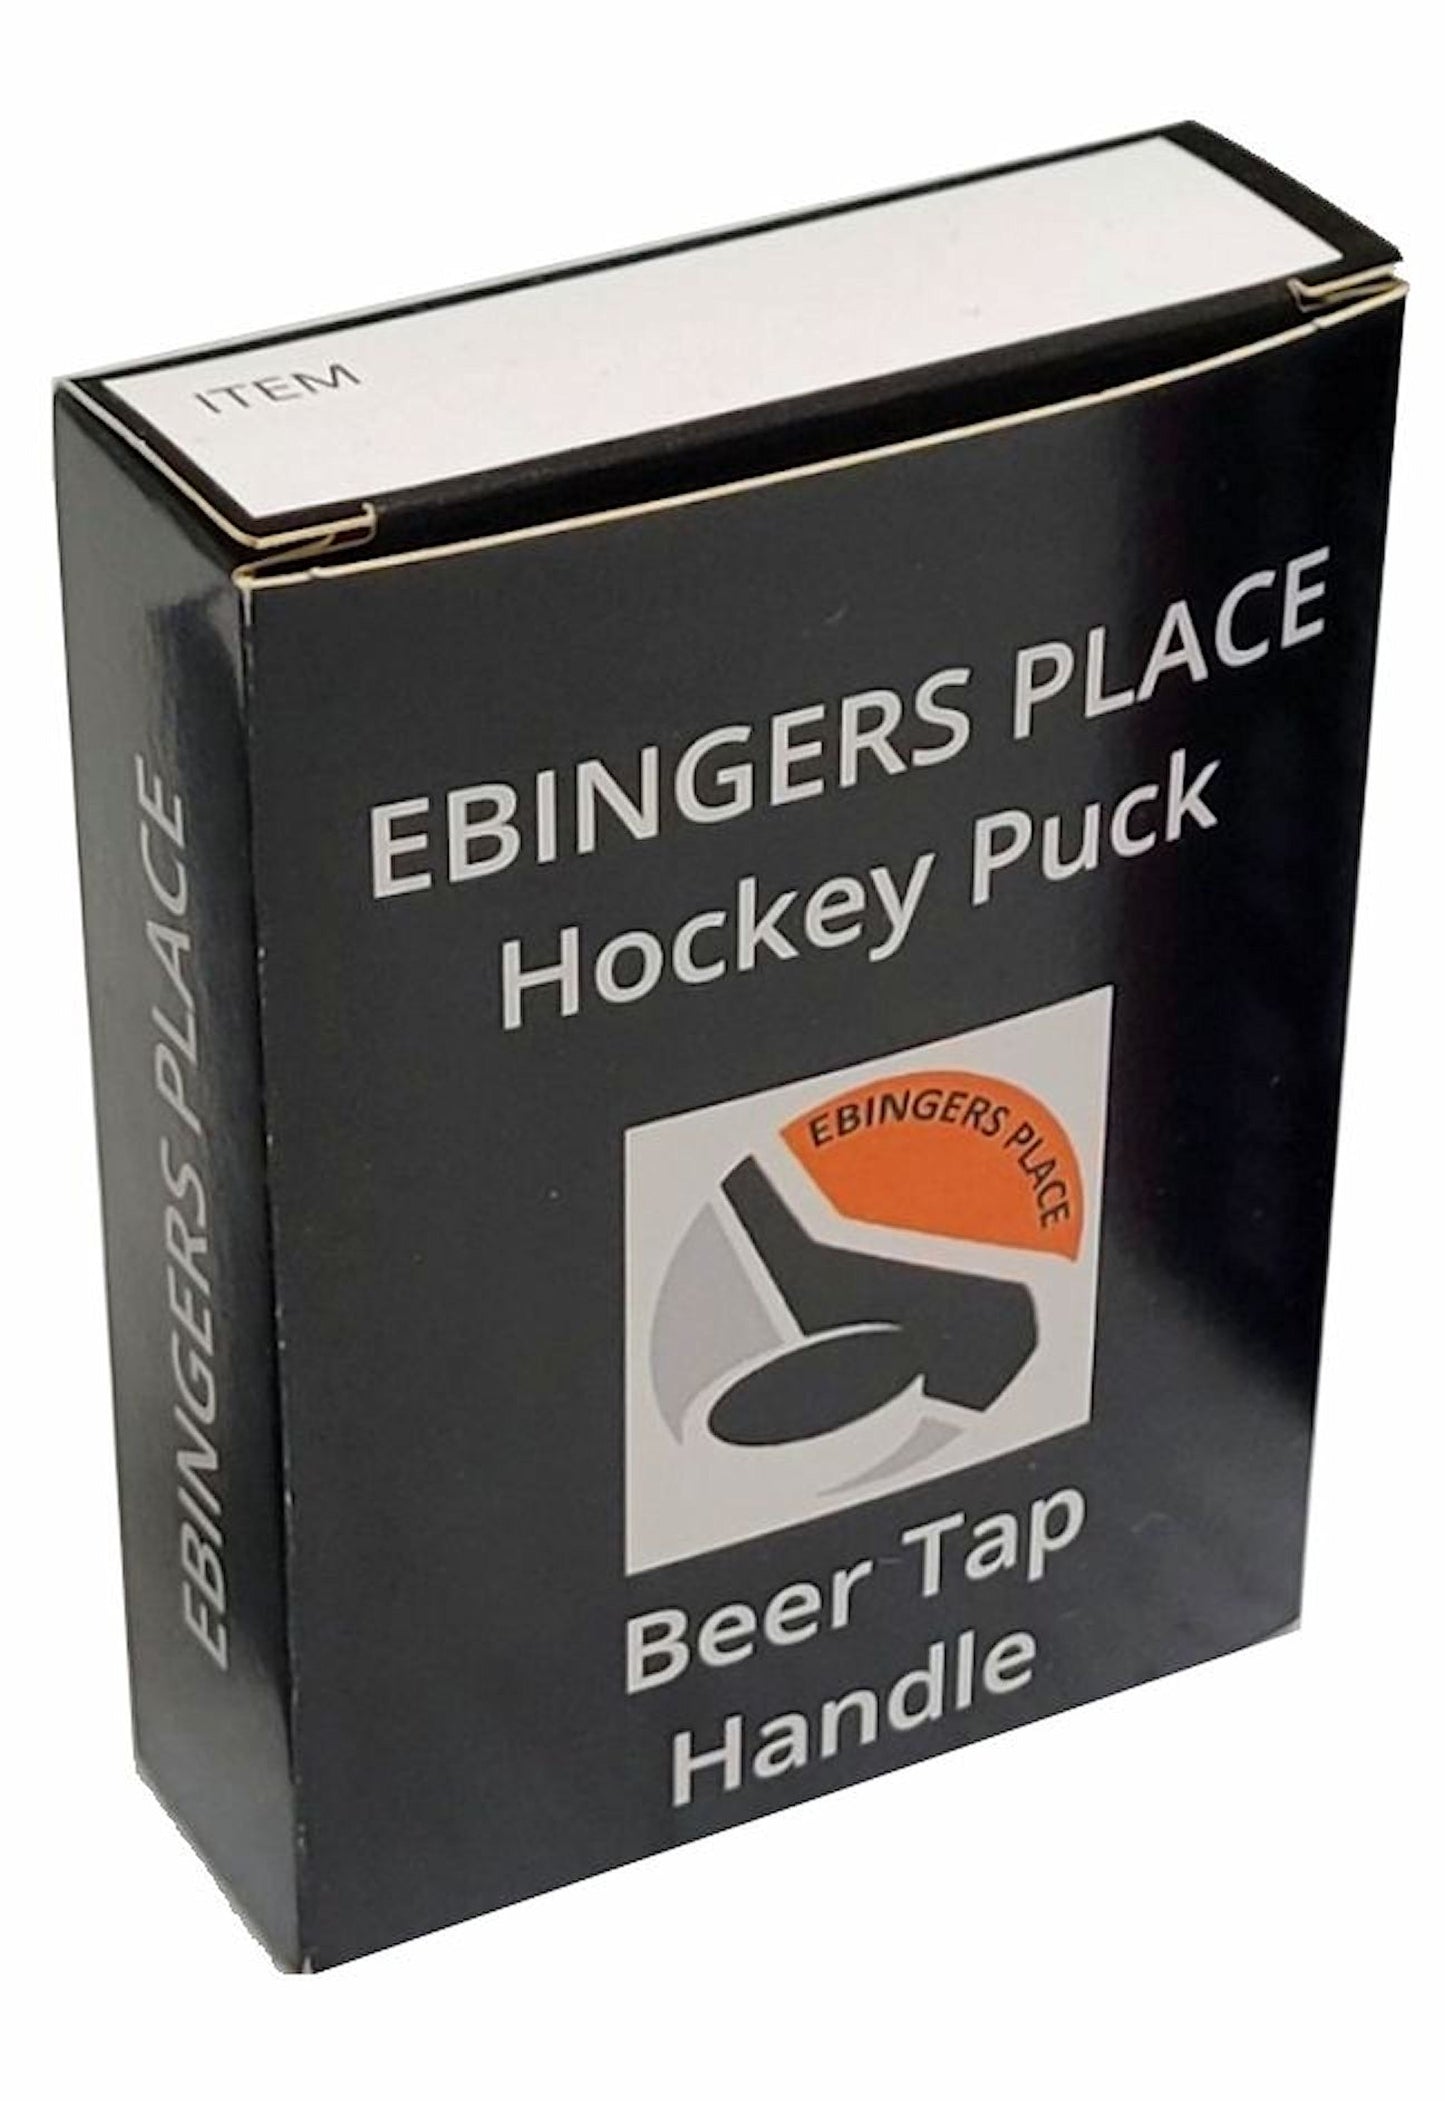 Pittsburgh Penguins Reverse Series Hockey Puck Beer Tap Handle